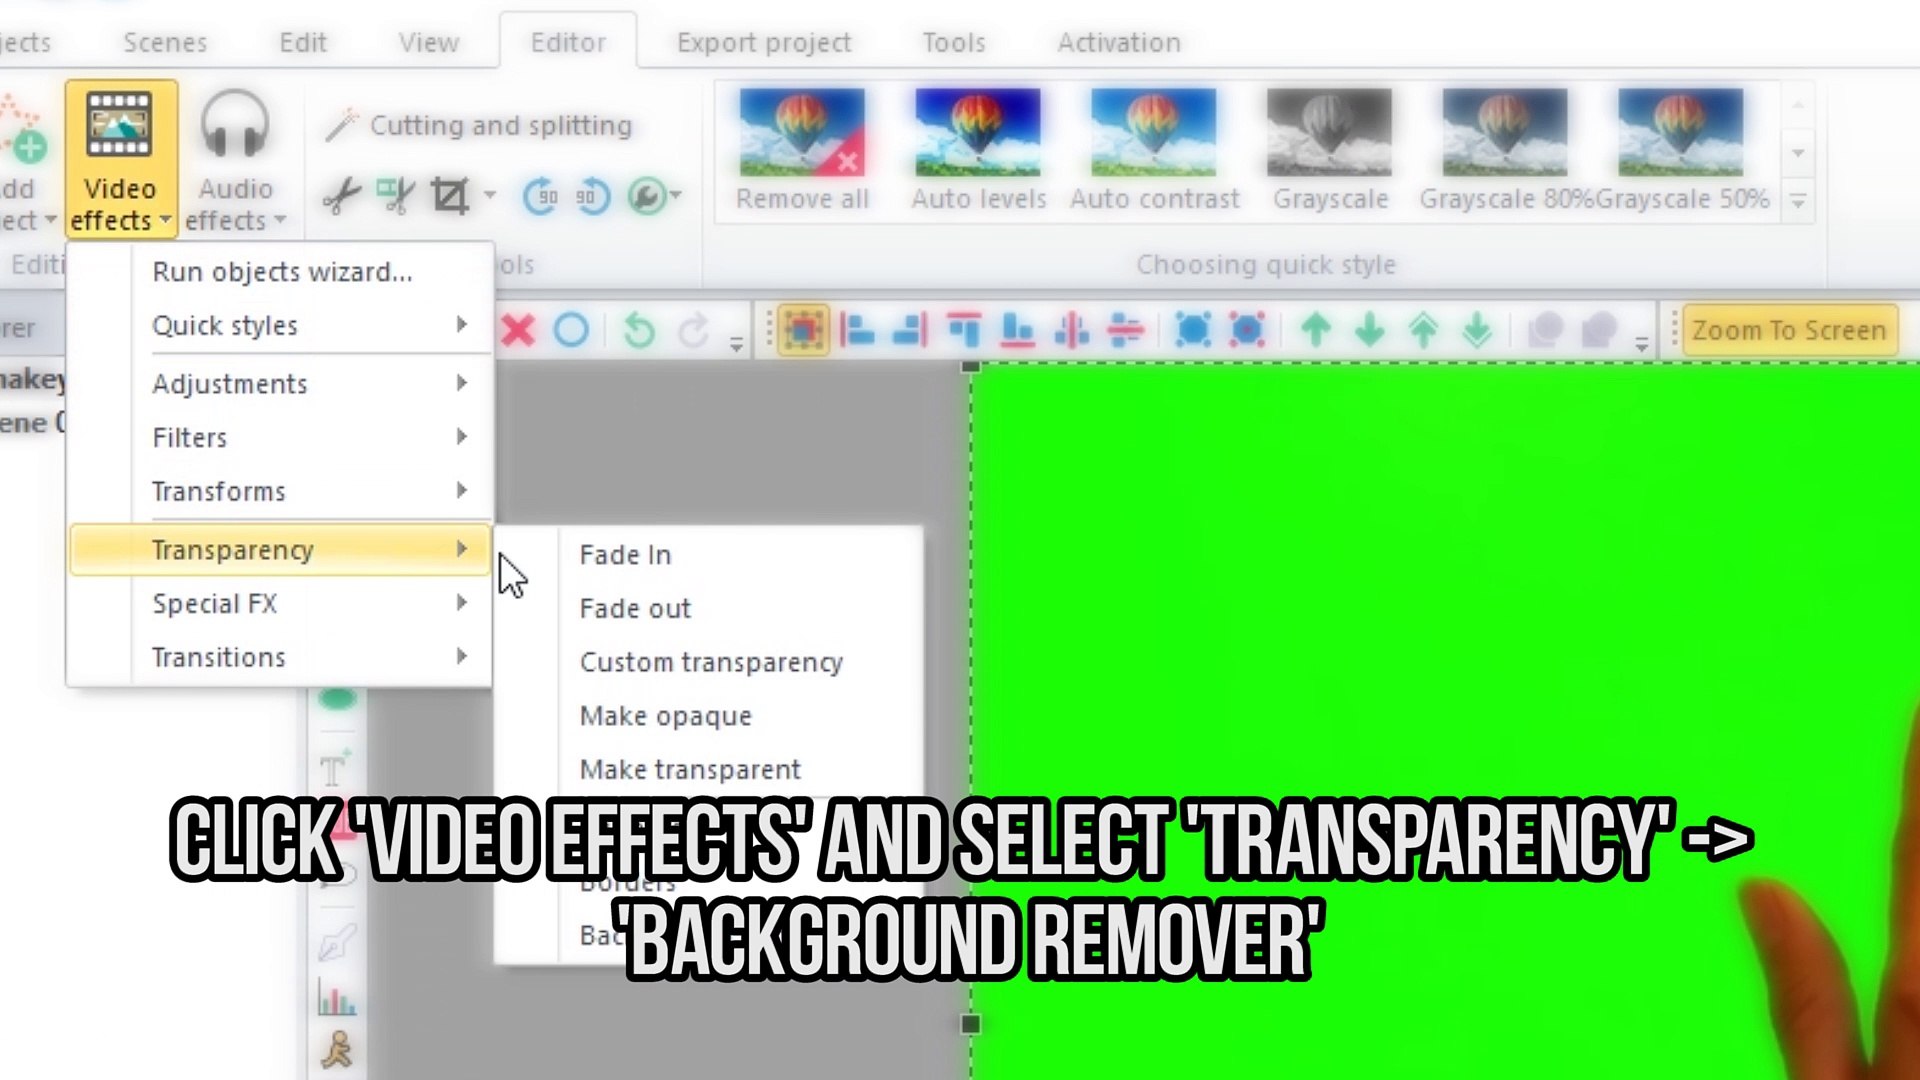 Bạn đang tìm kiếm một công cụ hỗ trợ xoá nền video? Hãy truy cập Chroma Key và sử dụng Background video remover. Chỉ với vài thao tác đơn giản, bạn sẽ tạo ra một video được tách nền một cách hoàn hảo.